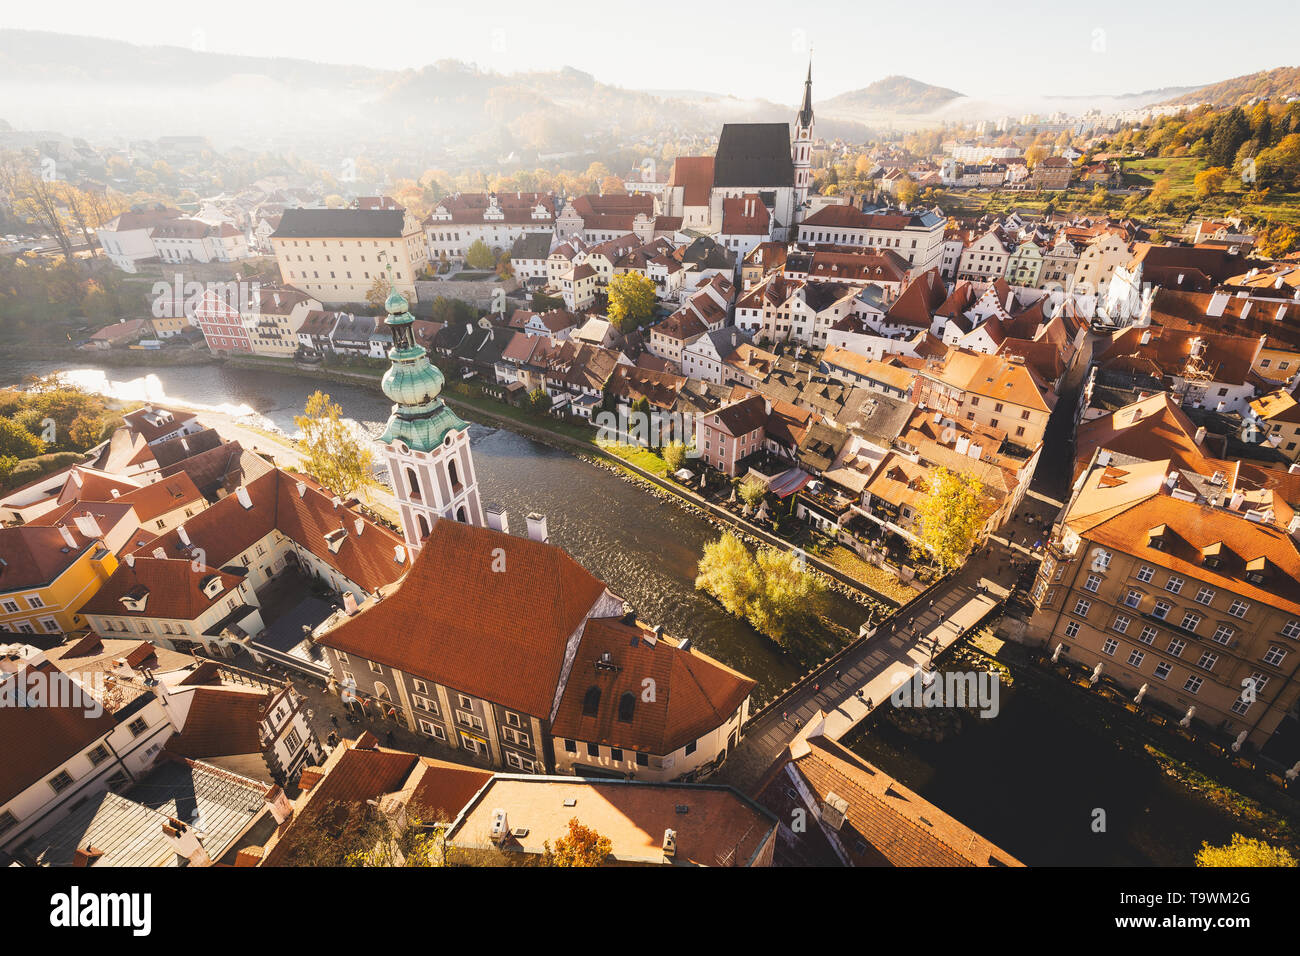 Luftaufnahme der historischen Stadt Cesky Krumlov mit dem berühmten Schloss Cesky Krumlov, UNESCO-Weltkulturerbe seit 1992, in der wunderschönen Golden morni Stockfoto